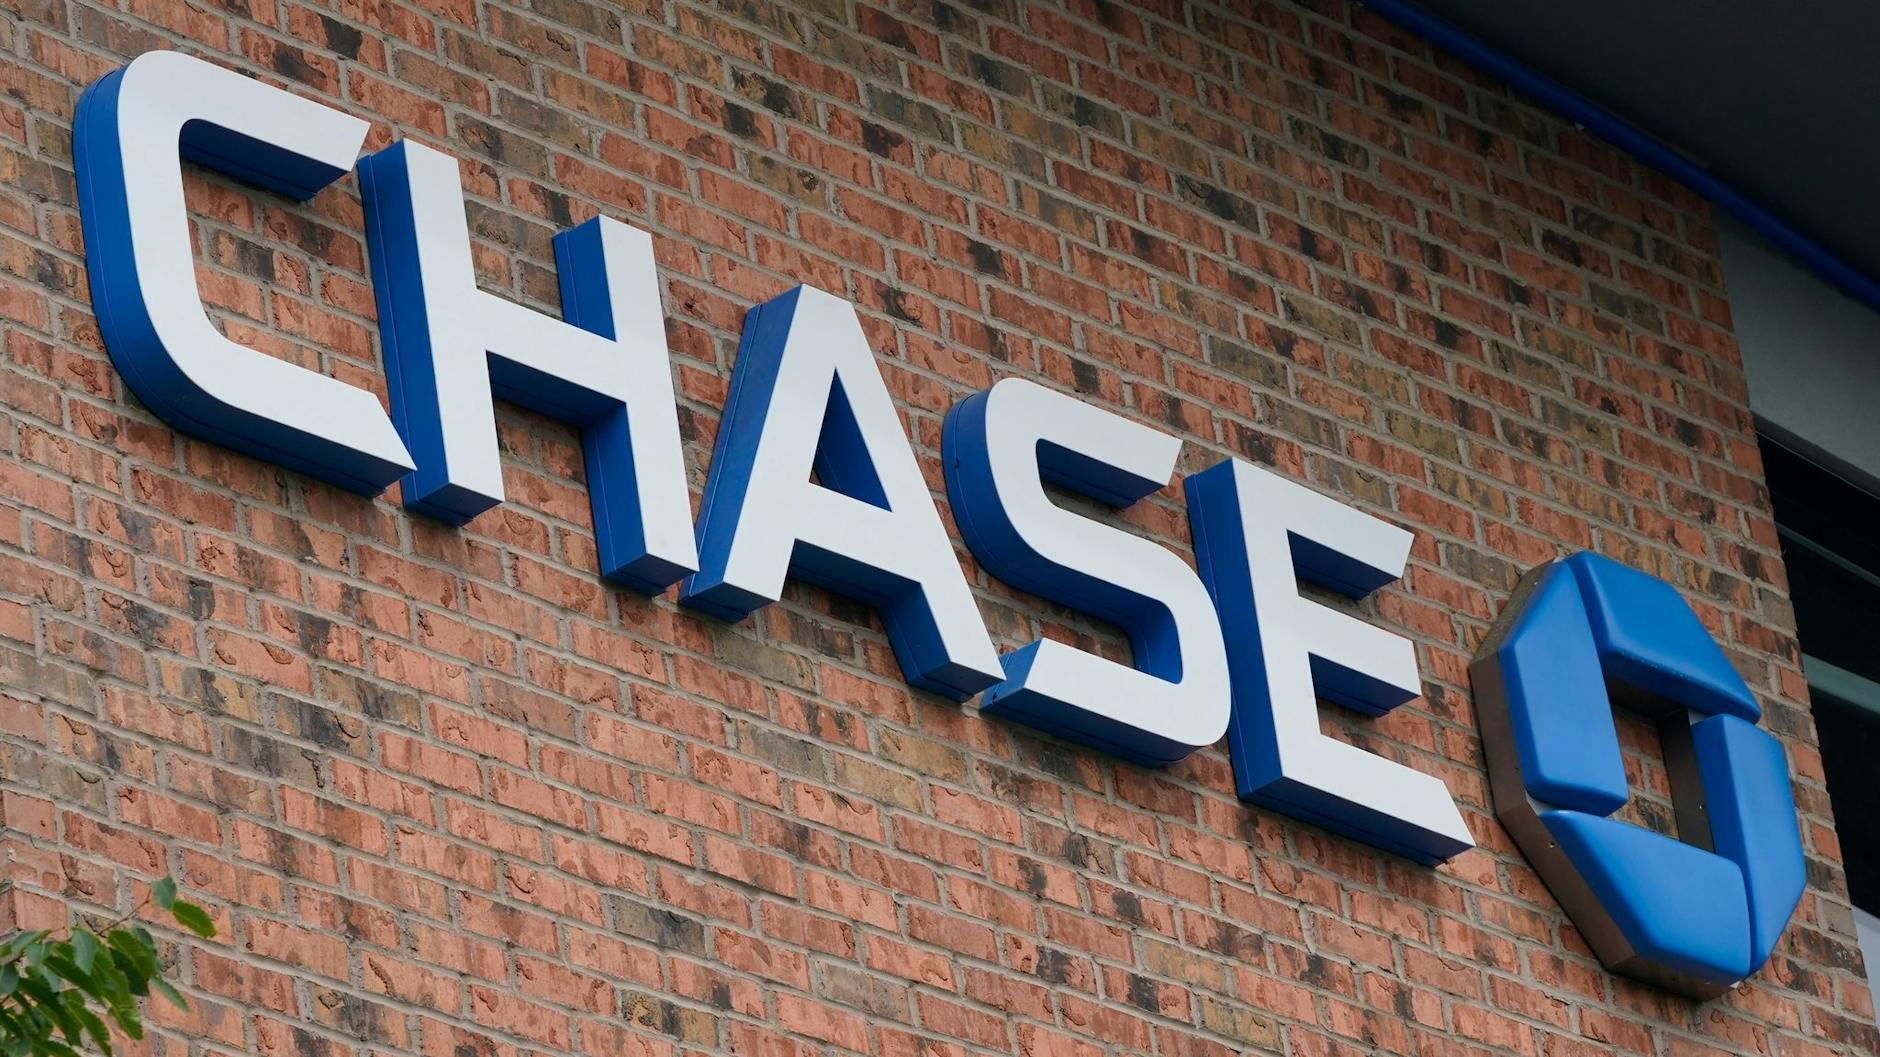 ARCHIV - Die größte US-Bank JPMorgan Chase hat ihre Risikovorsorge wegen des trüben Konjunkturausblicks deutlich erhöht.  